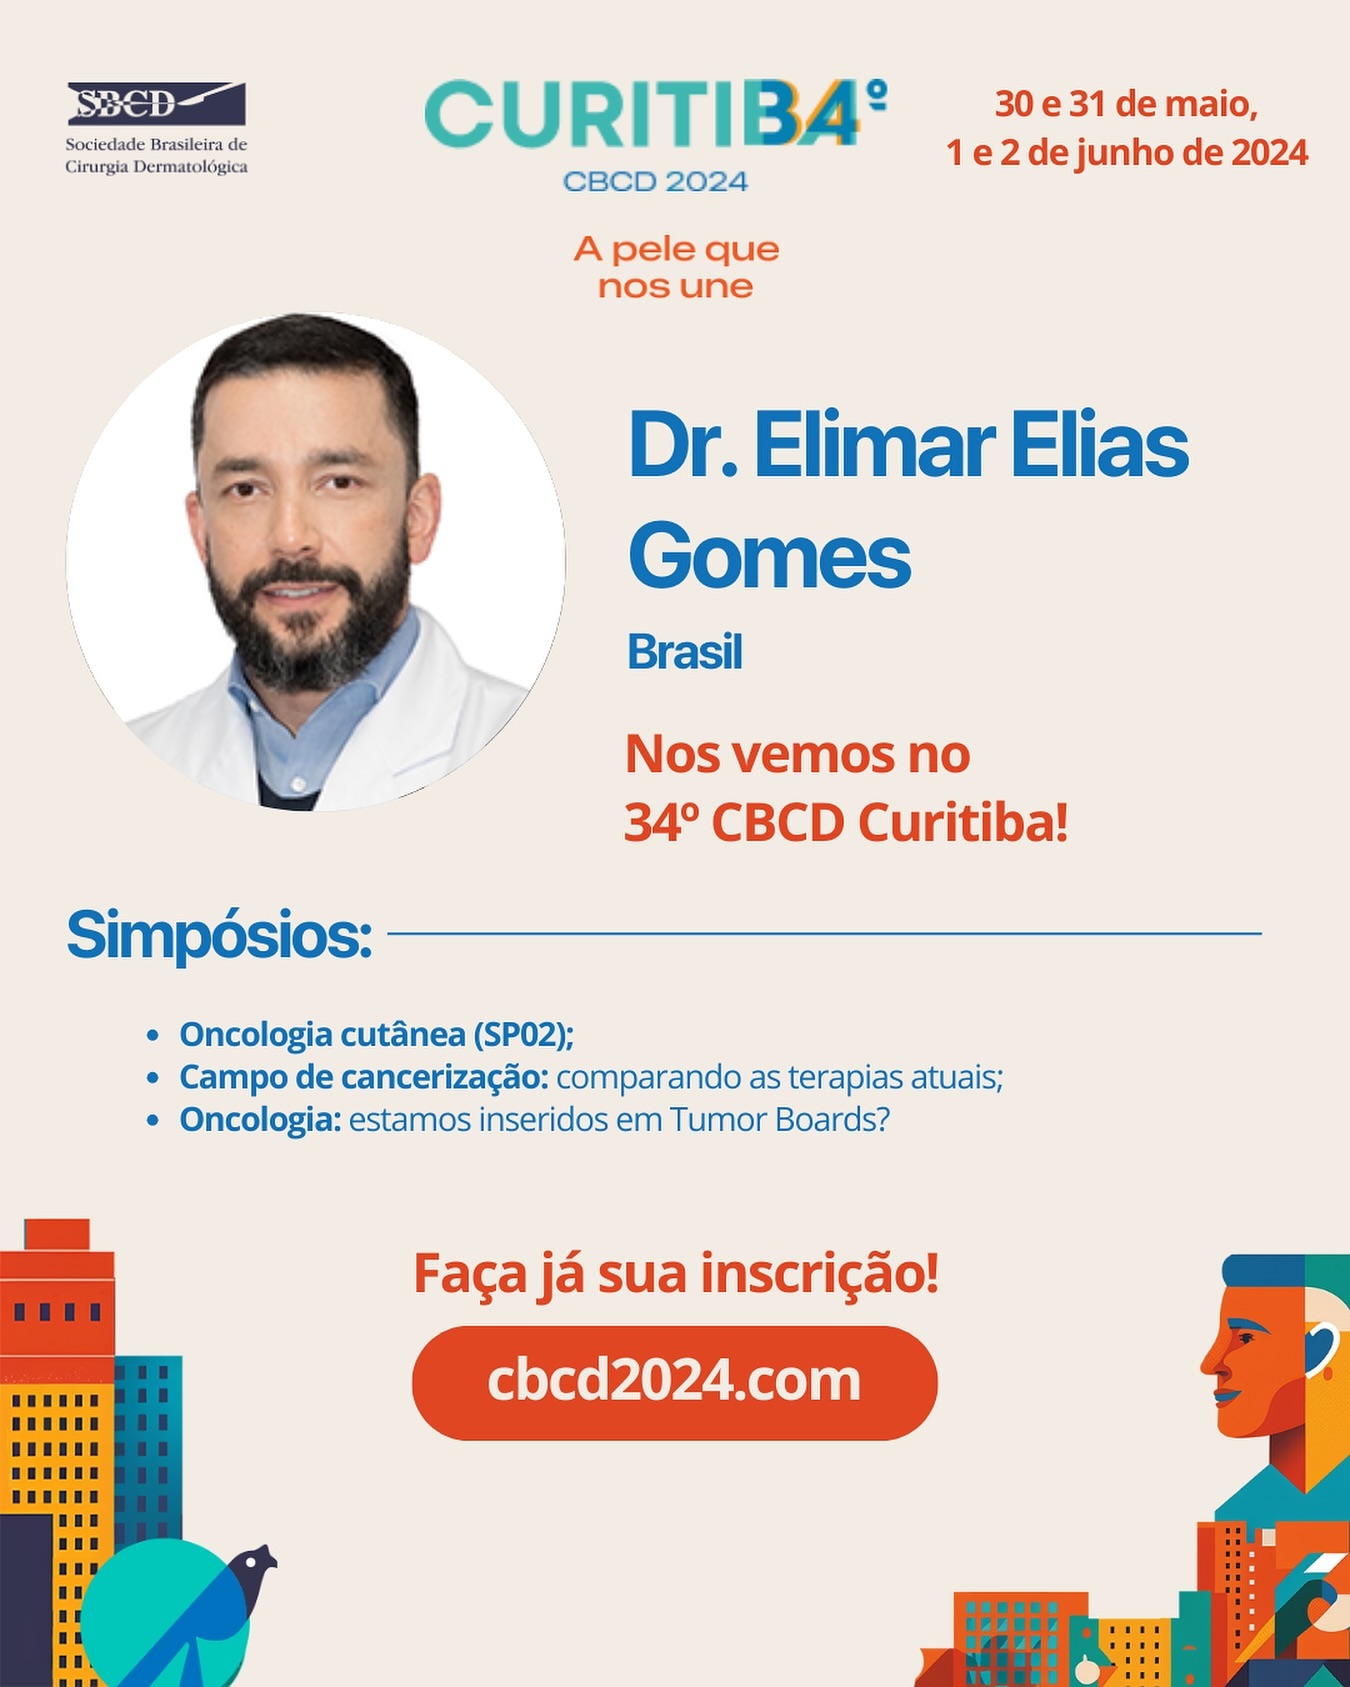 Nos vemos em Curitiba @34cbcd_curitiba no maior congresso de cirurgia dermatológica do mundo: o Brasileiro!!

@sbcderm 

#dermatologia #cirurgiadermatologia #oncologiacutanea #cancerdepele
#melanoma